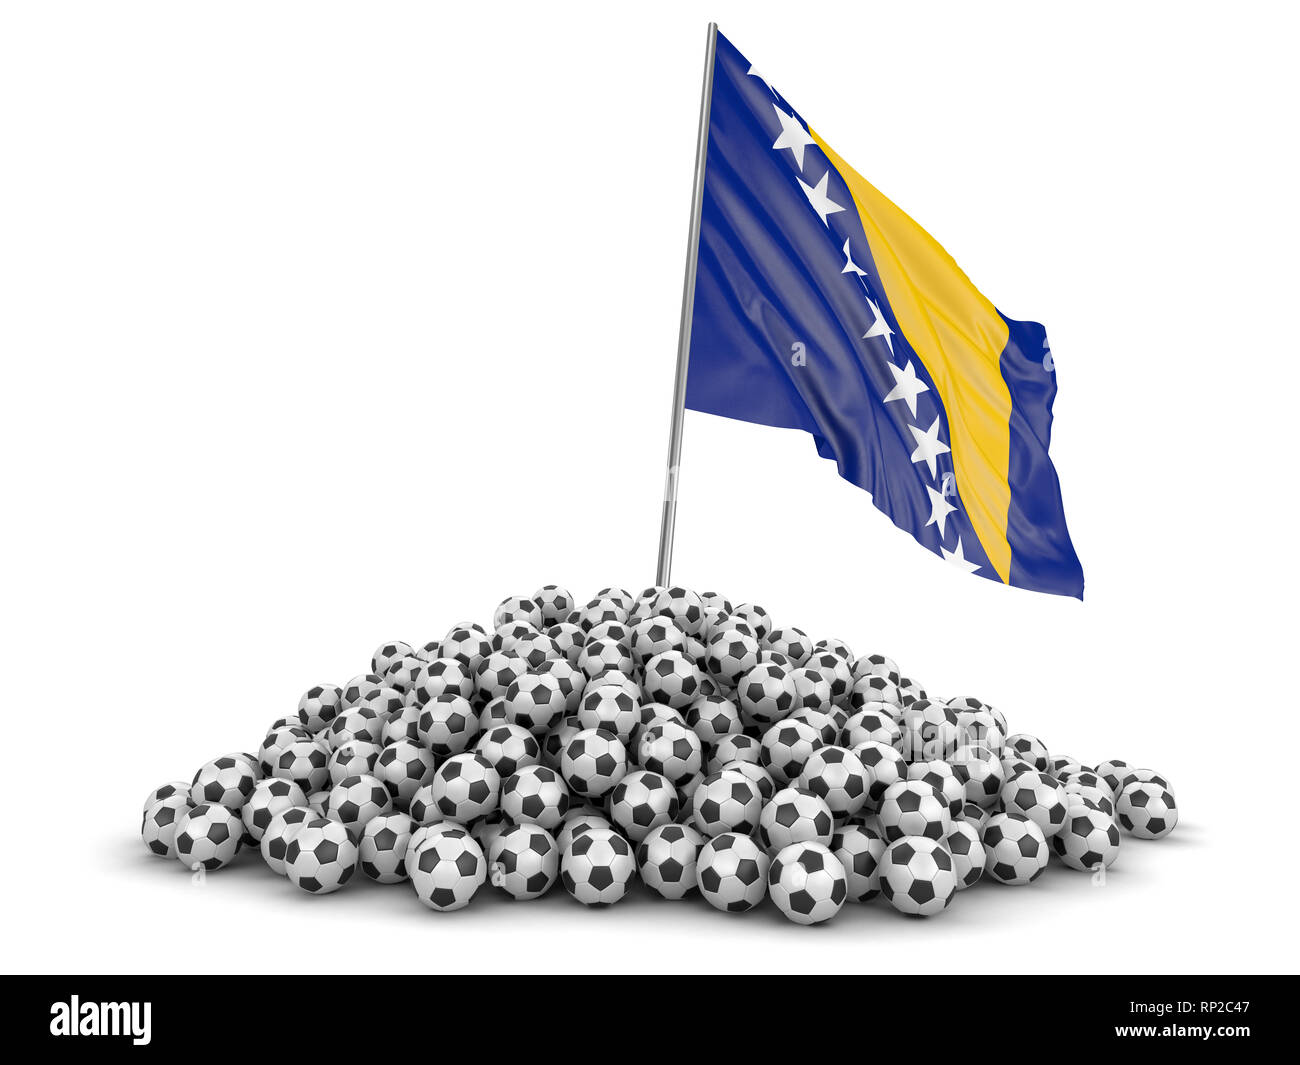 Tas de ballons de soccer et d'un drapeau. Image avec clipping path Banque D'Images